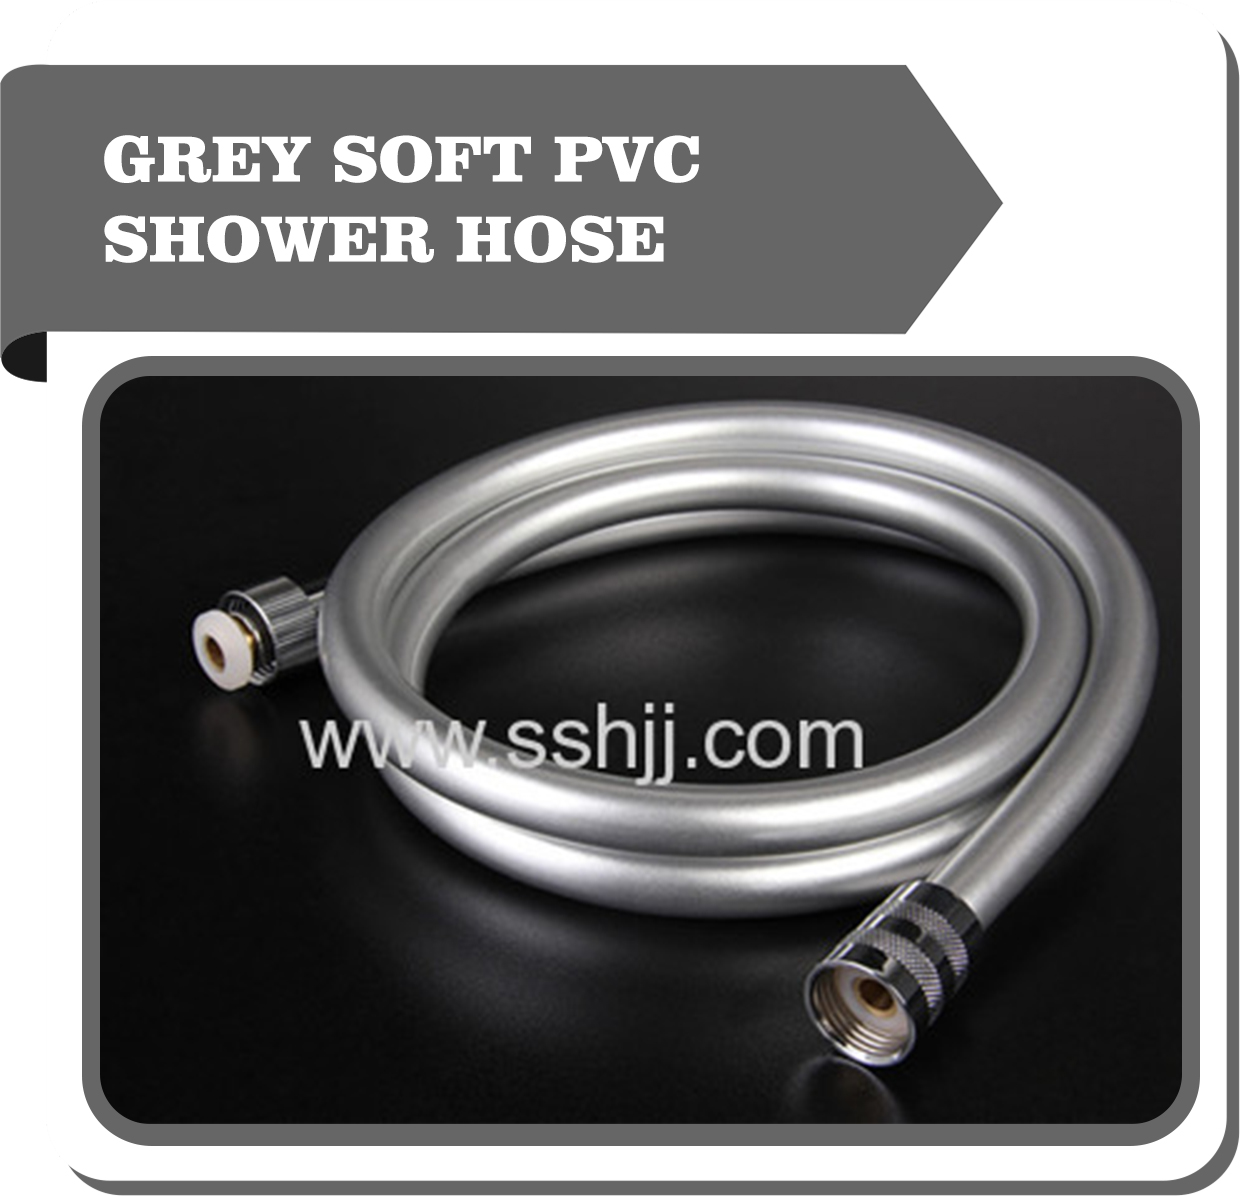 Grey soft pvc shower hose / bathroom pvc hose